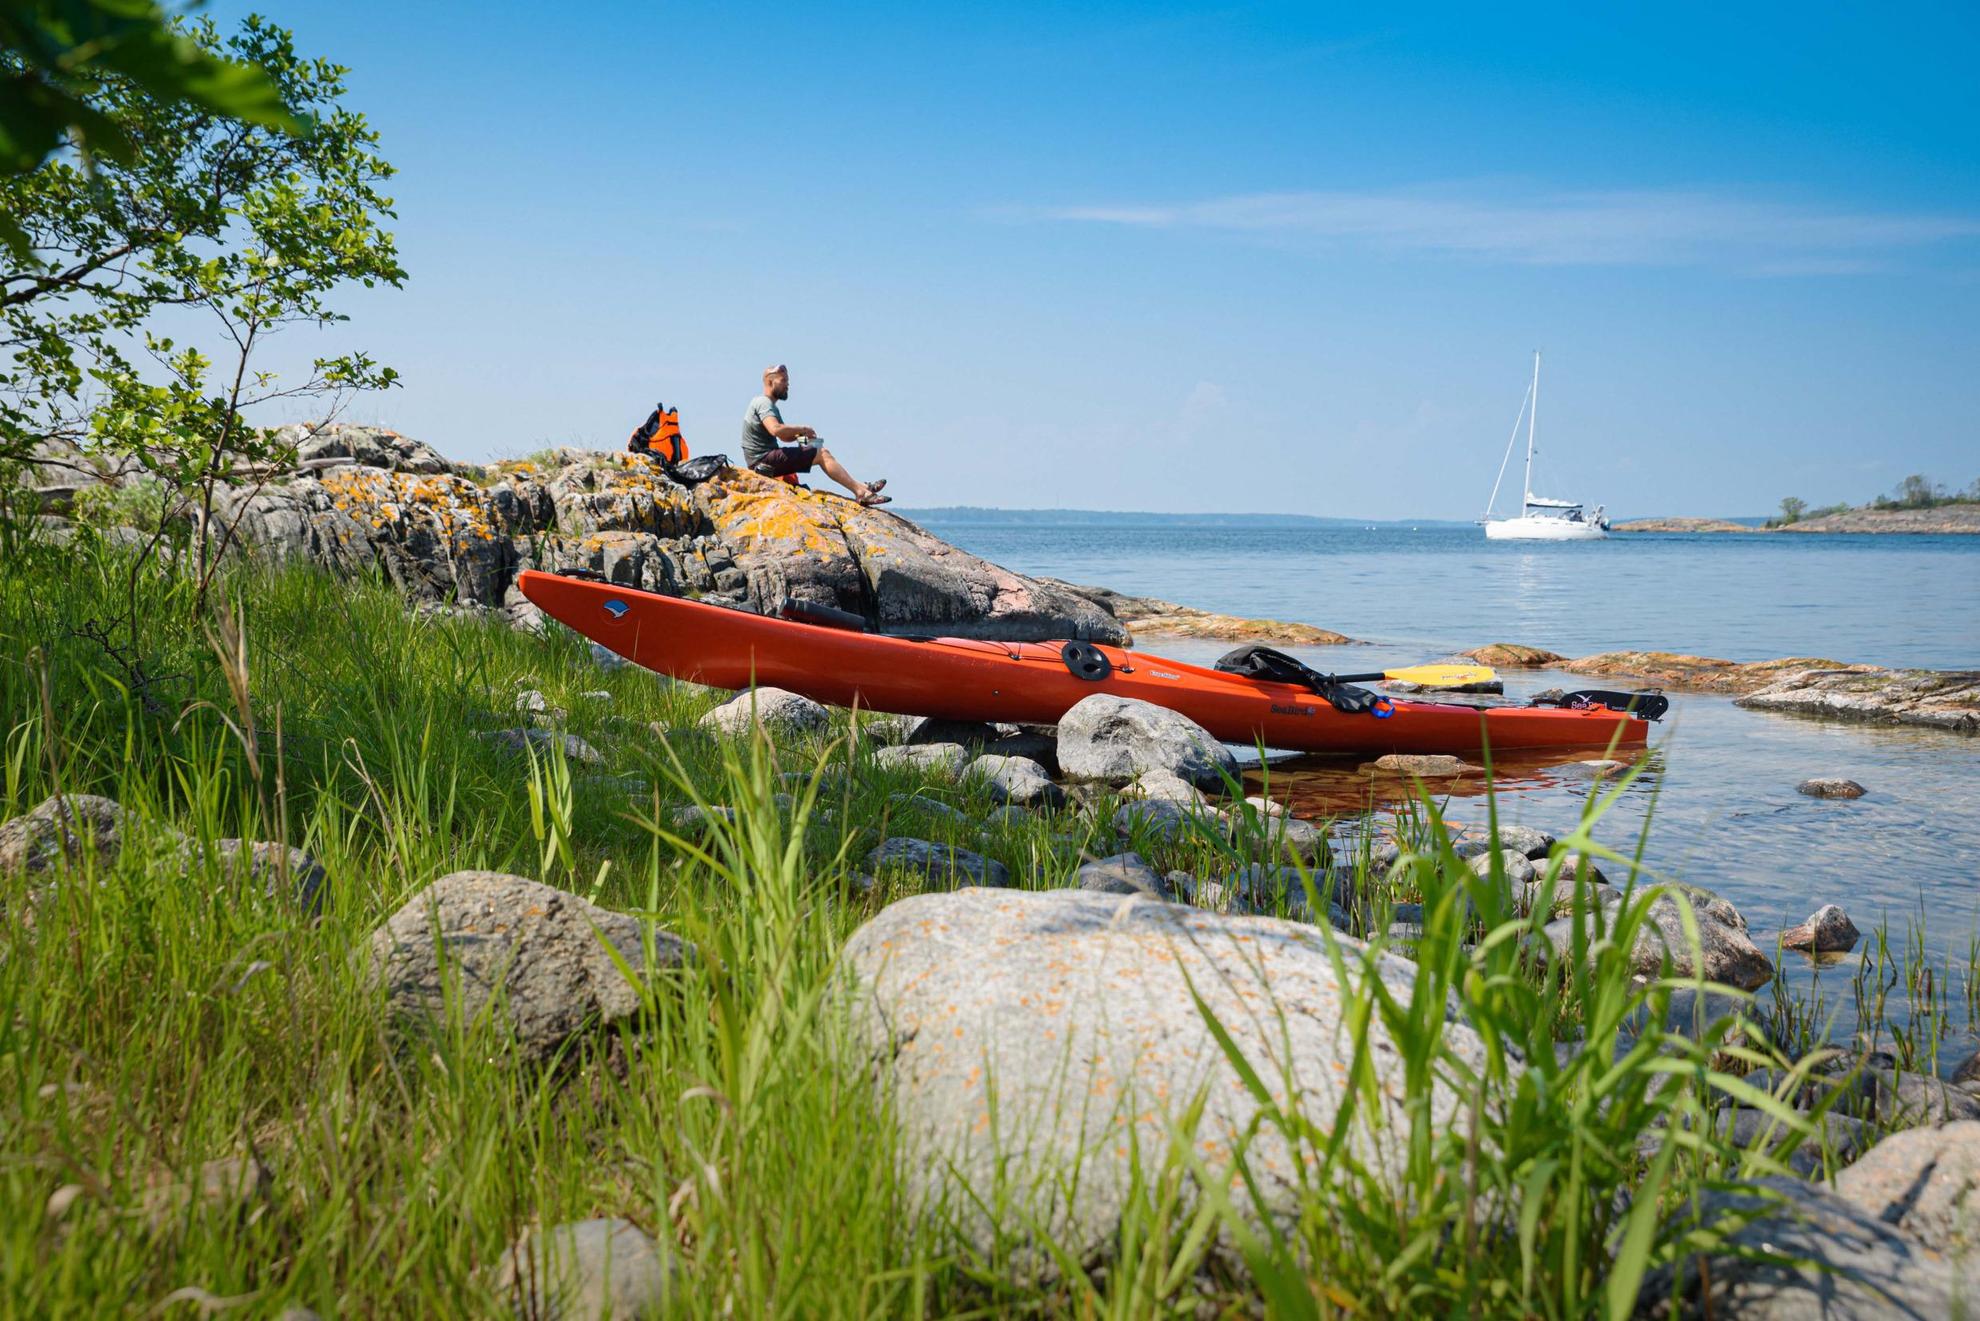 Un kayak orange est au bord de l'eau et un homme déjeune à côté sur un rocher. Un voilier blanc se trouve en arrière-plan.